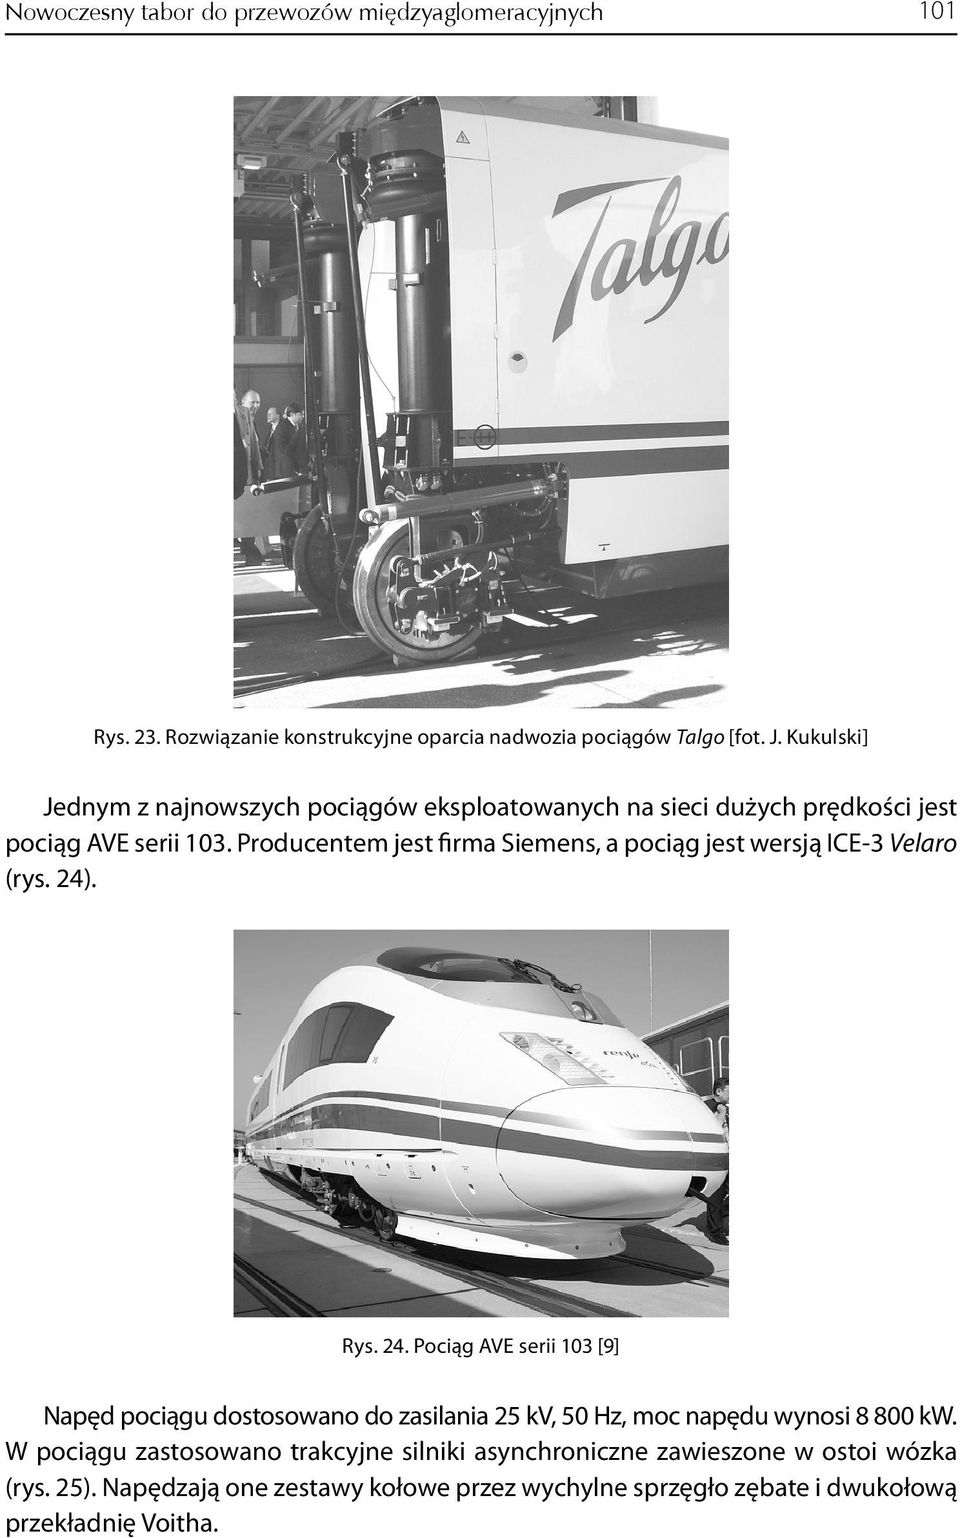 Producentem jest firma Siemens, a pociąg jest wersją ICE-3 Velaro (rys. 24)